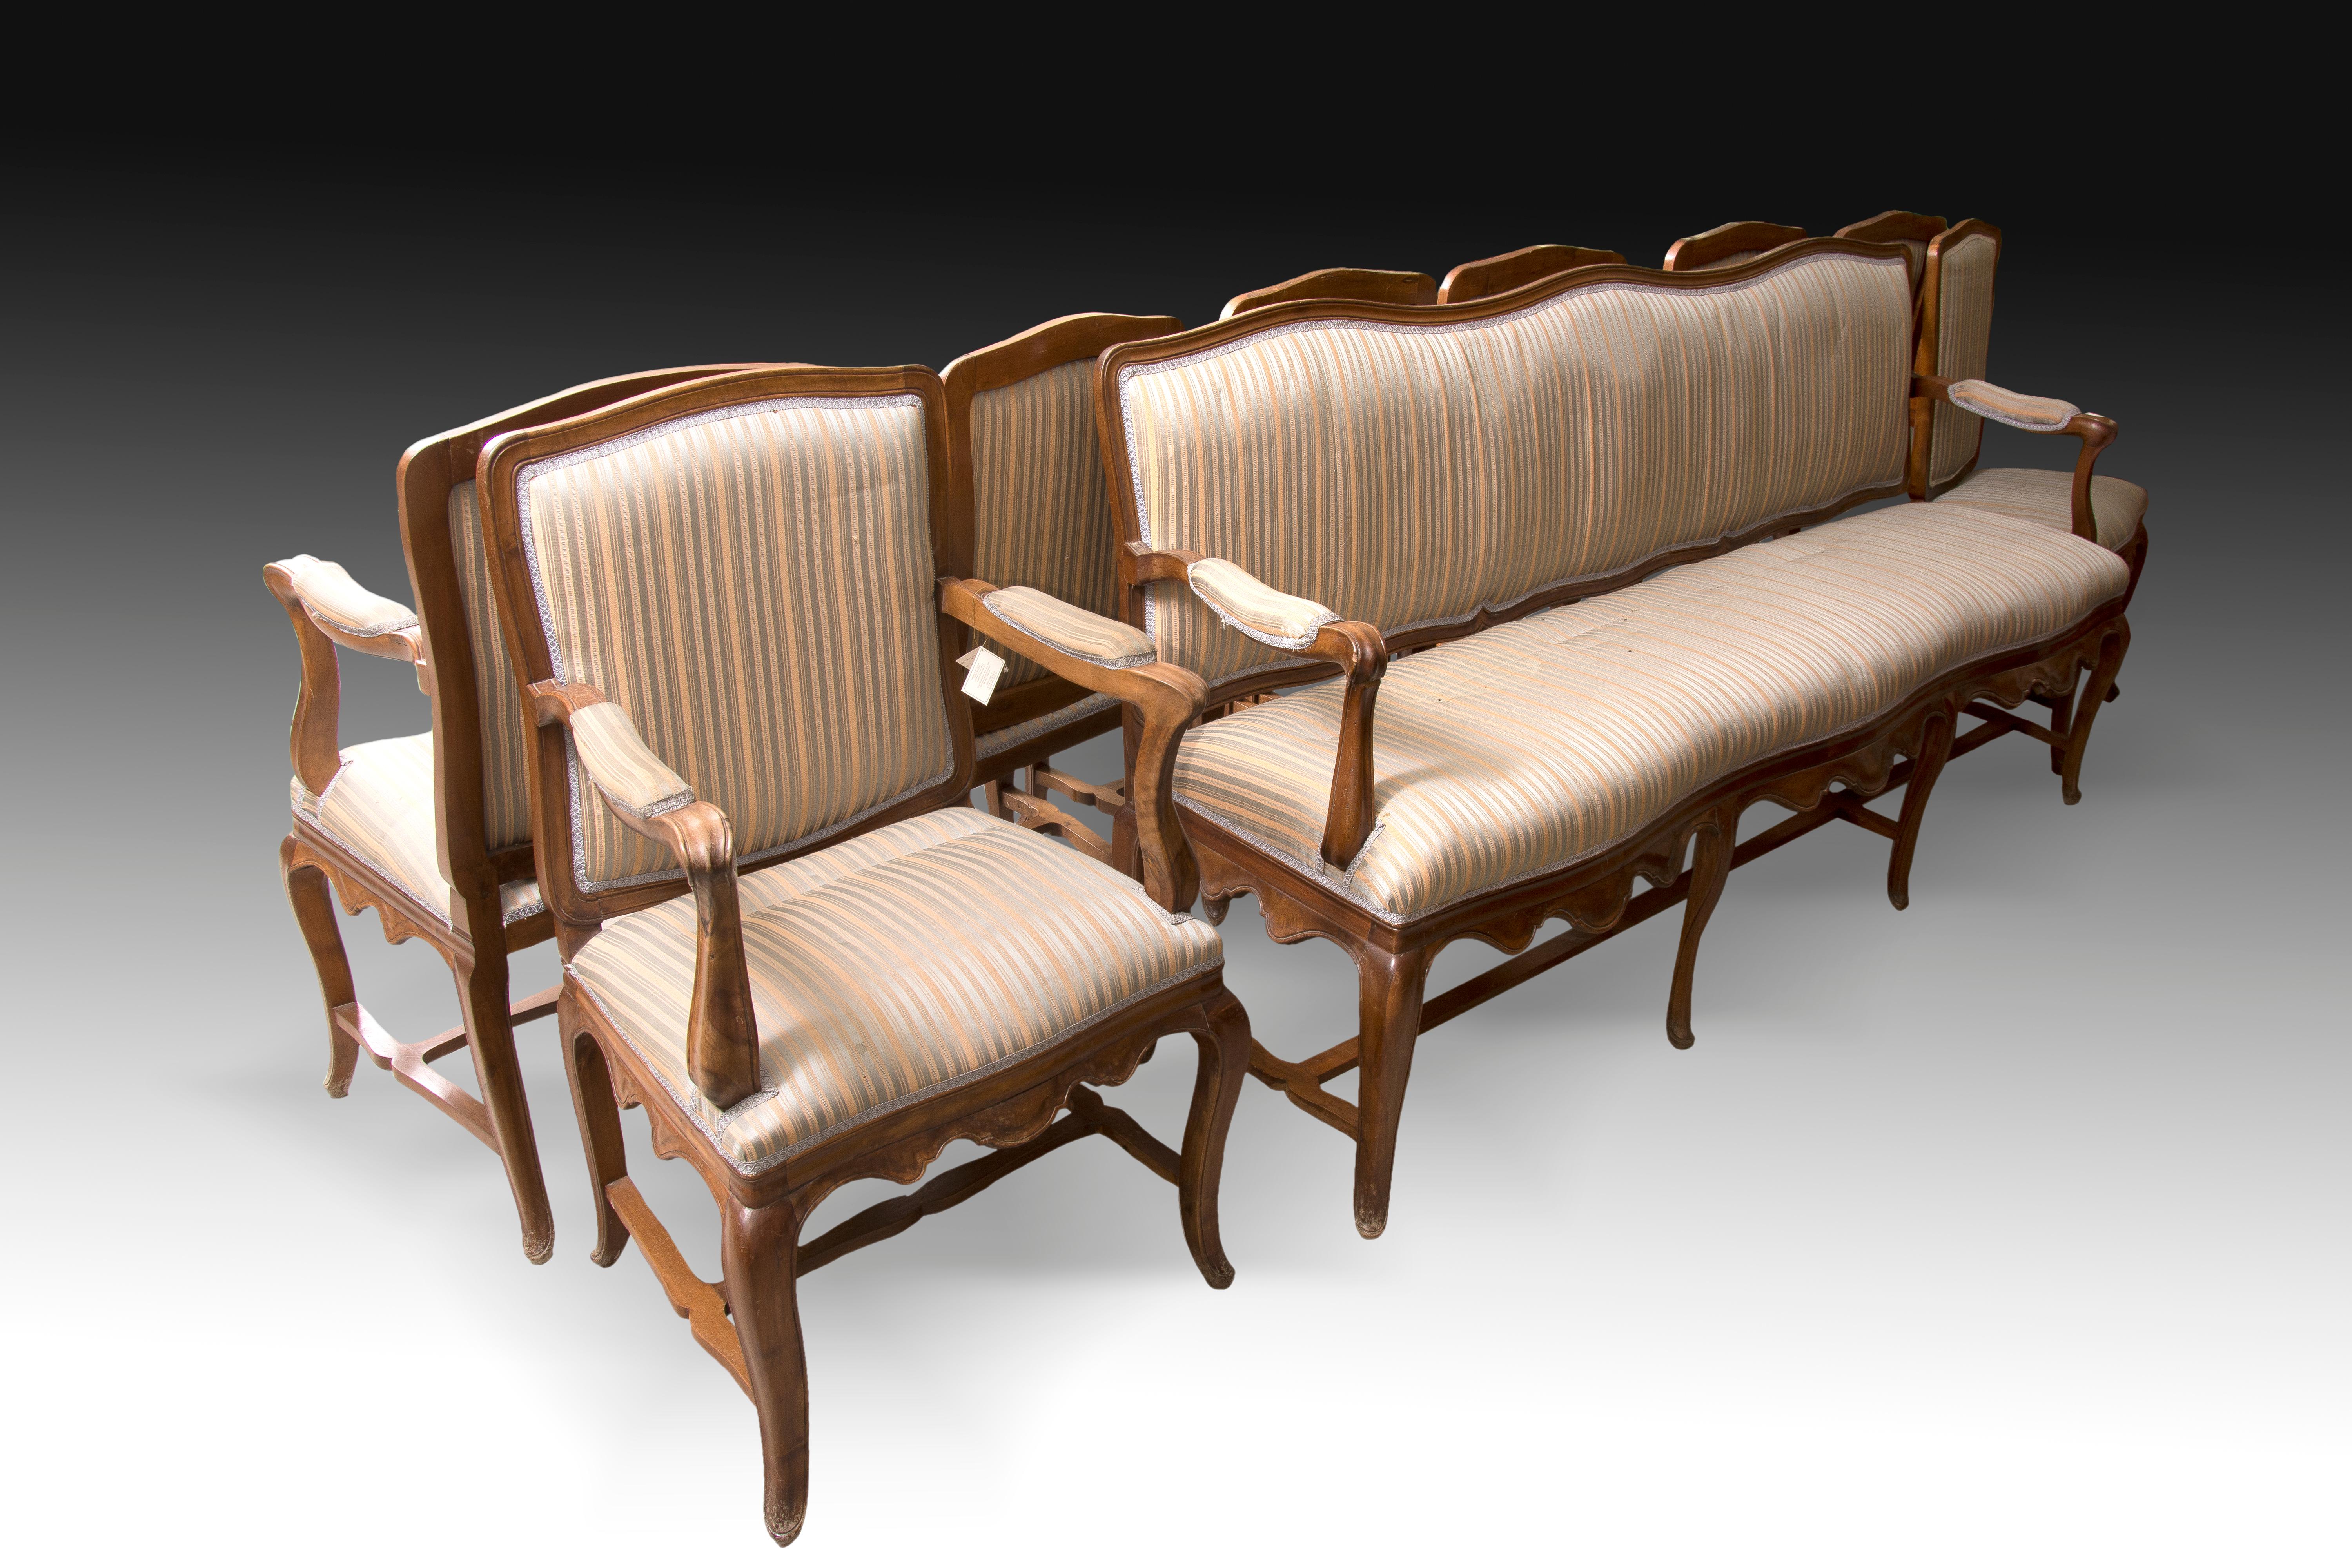 Sitzgarnitur aus Nussbaum und Textil (sechs Stühle, zwei Sessel und ein Sofa). 18. Jahrhundert.
Set bestehend aus sechs Stühlen, zwei Sesseln und einem Sofa aus Mahagoniholz mit geschnitzten Beinen in Cabriolet. Die Rückenlehnen, quadratisch,